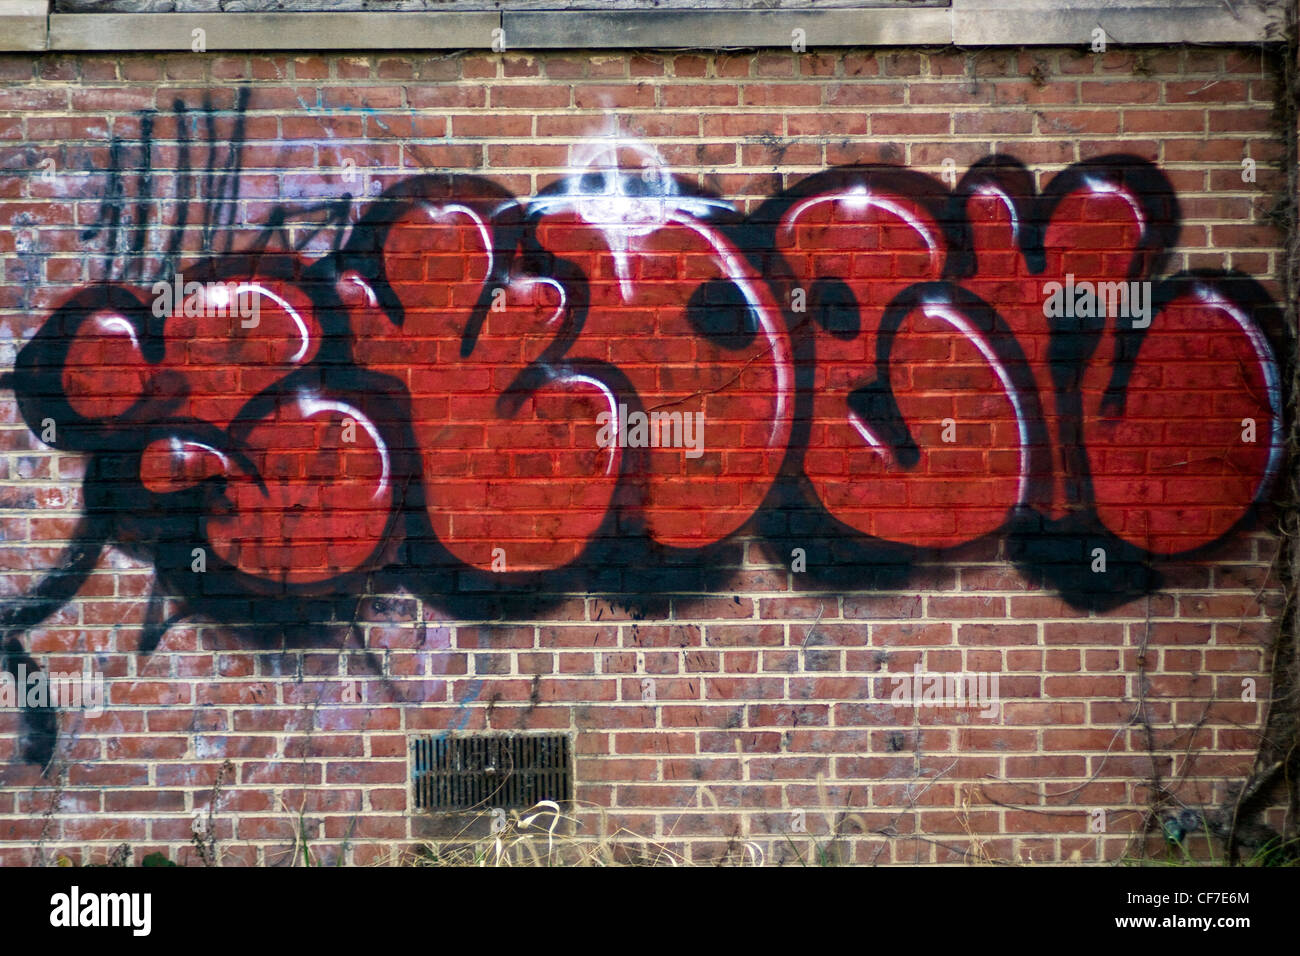 Spray graffiti peint sur un mur en brique dans un entrepôt Shirlington Arlington County zone urbaine non constituées en société Banque D'Images